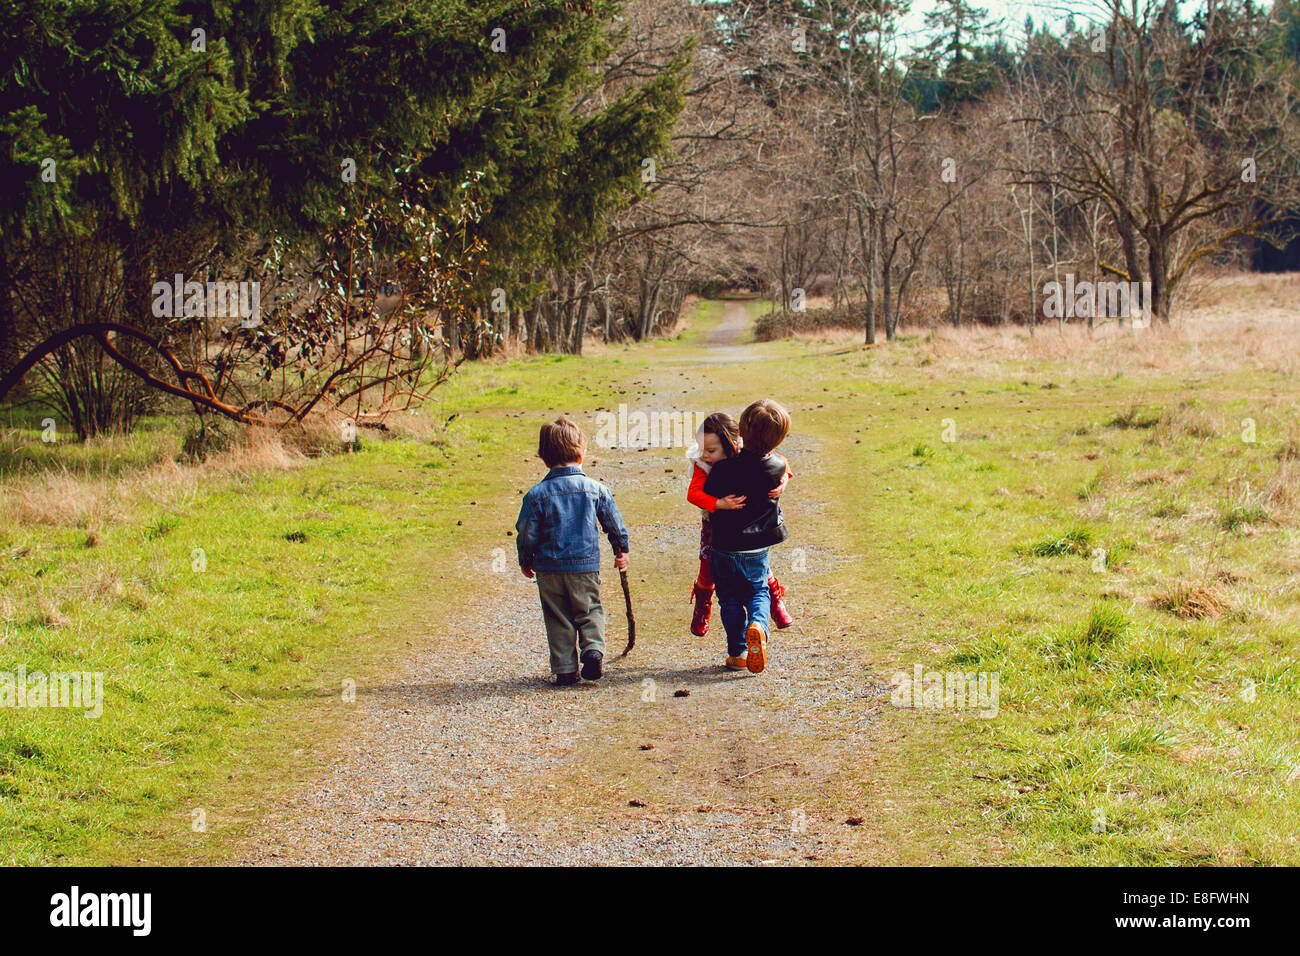 Trois enfants jouant sur un sentier rural, USA Banque D'Images